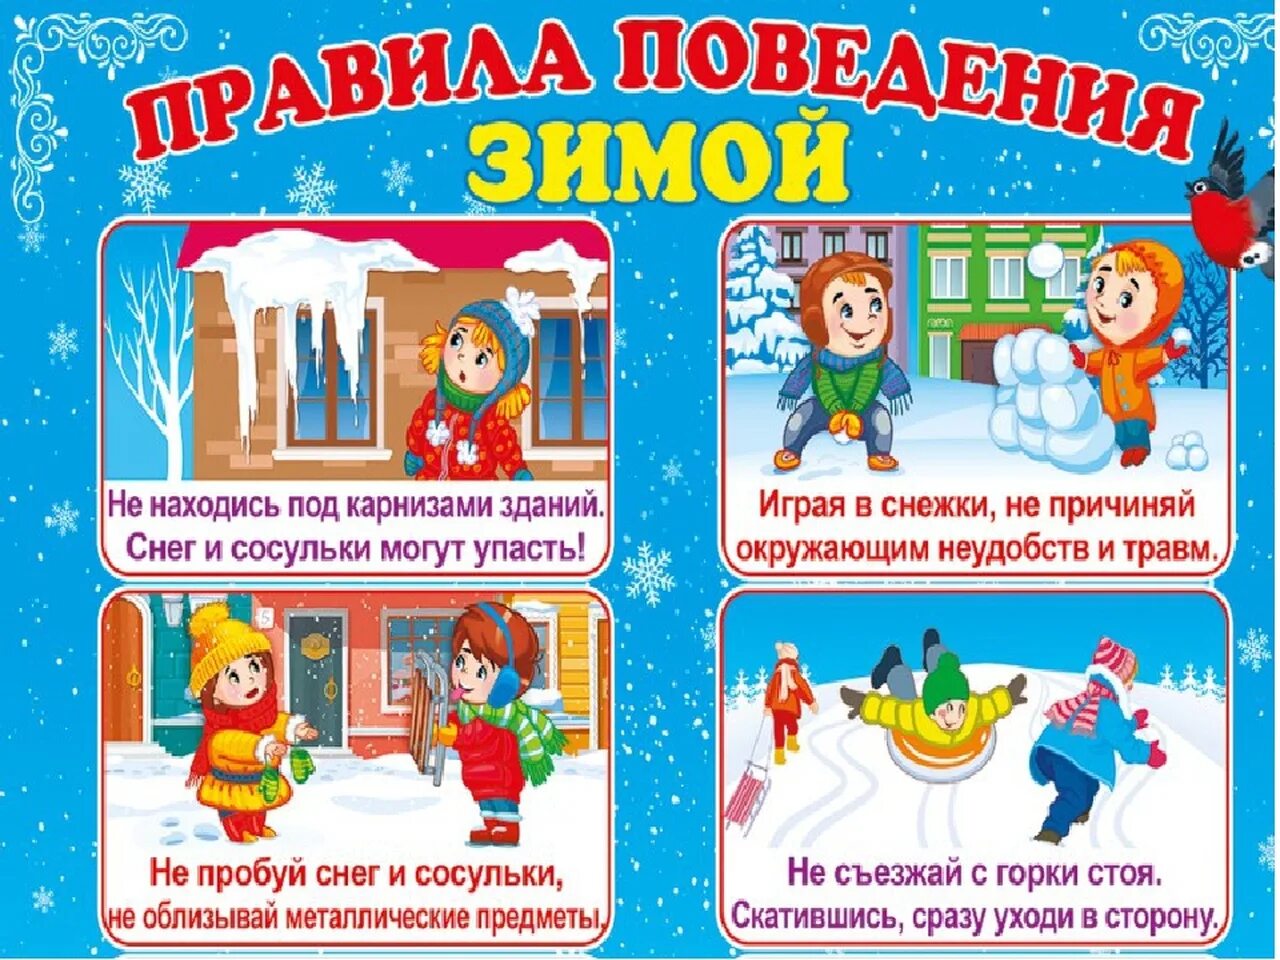 Правила развлечениях. Правила безопасности зимой для детей. Меры безопасности зимой для детей. Безопасная зима для детей. Безопасность зимой в детском саду.